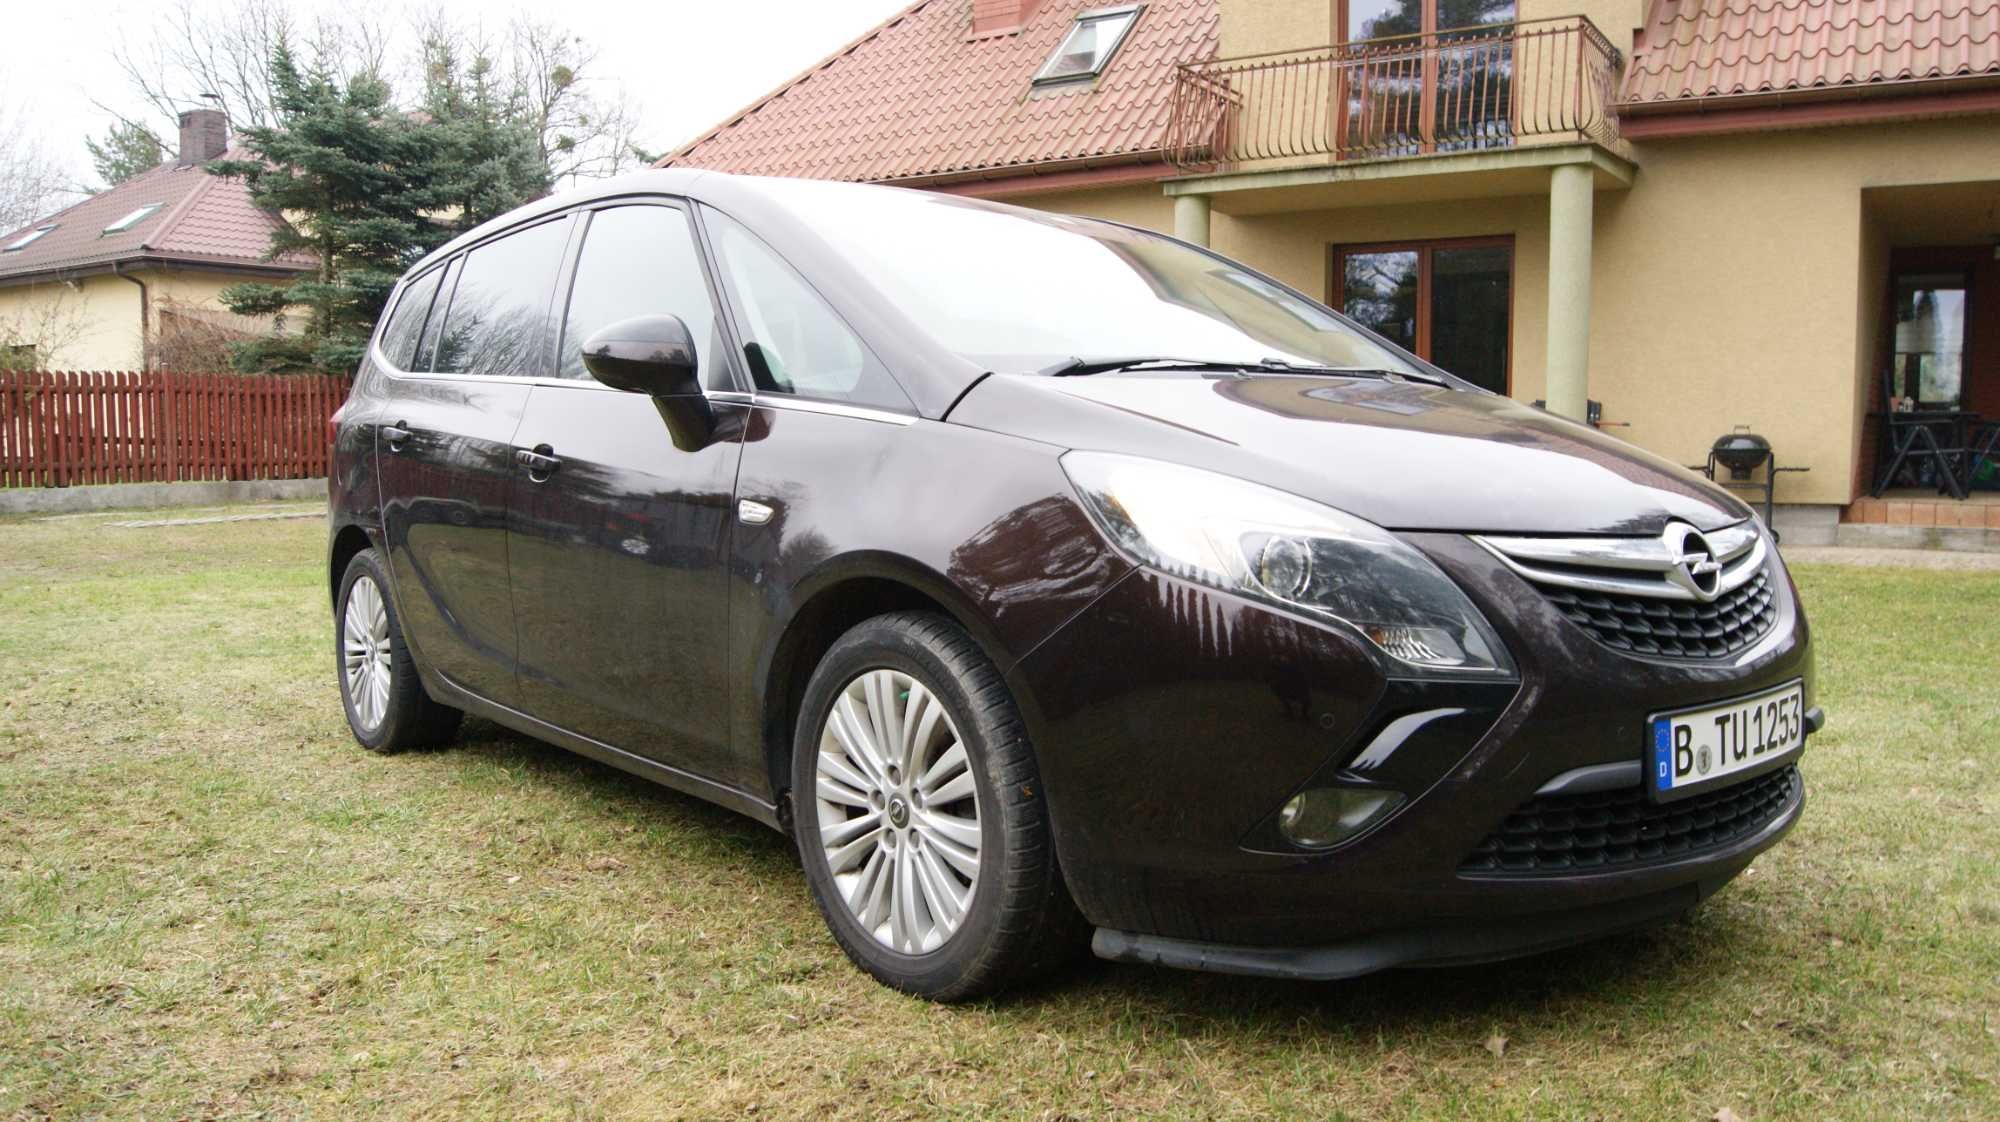 Opel Zafira 1,6 D 2015 rok do poprawek